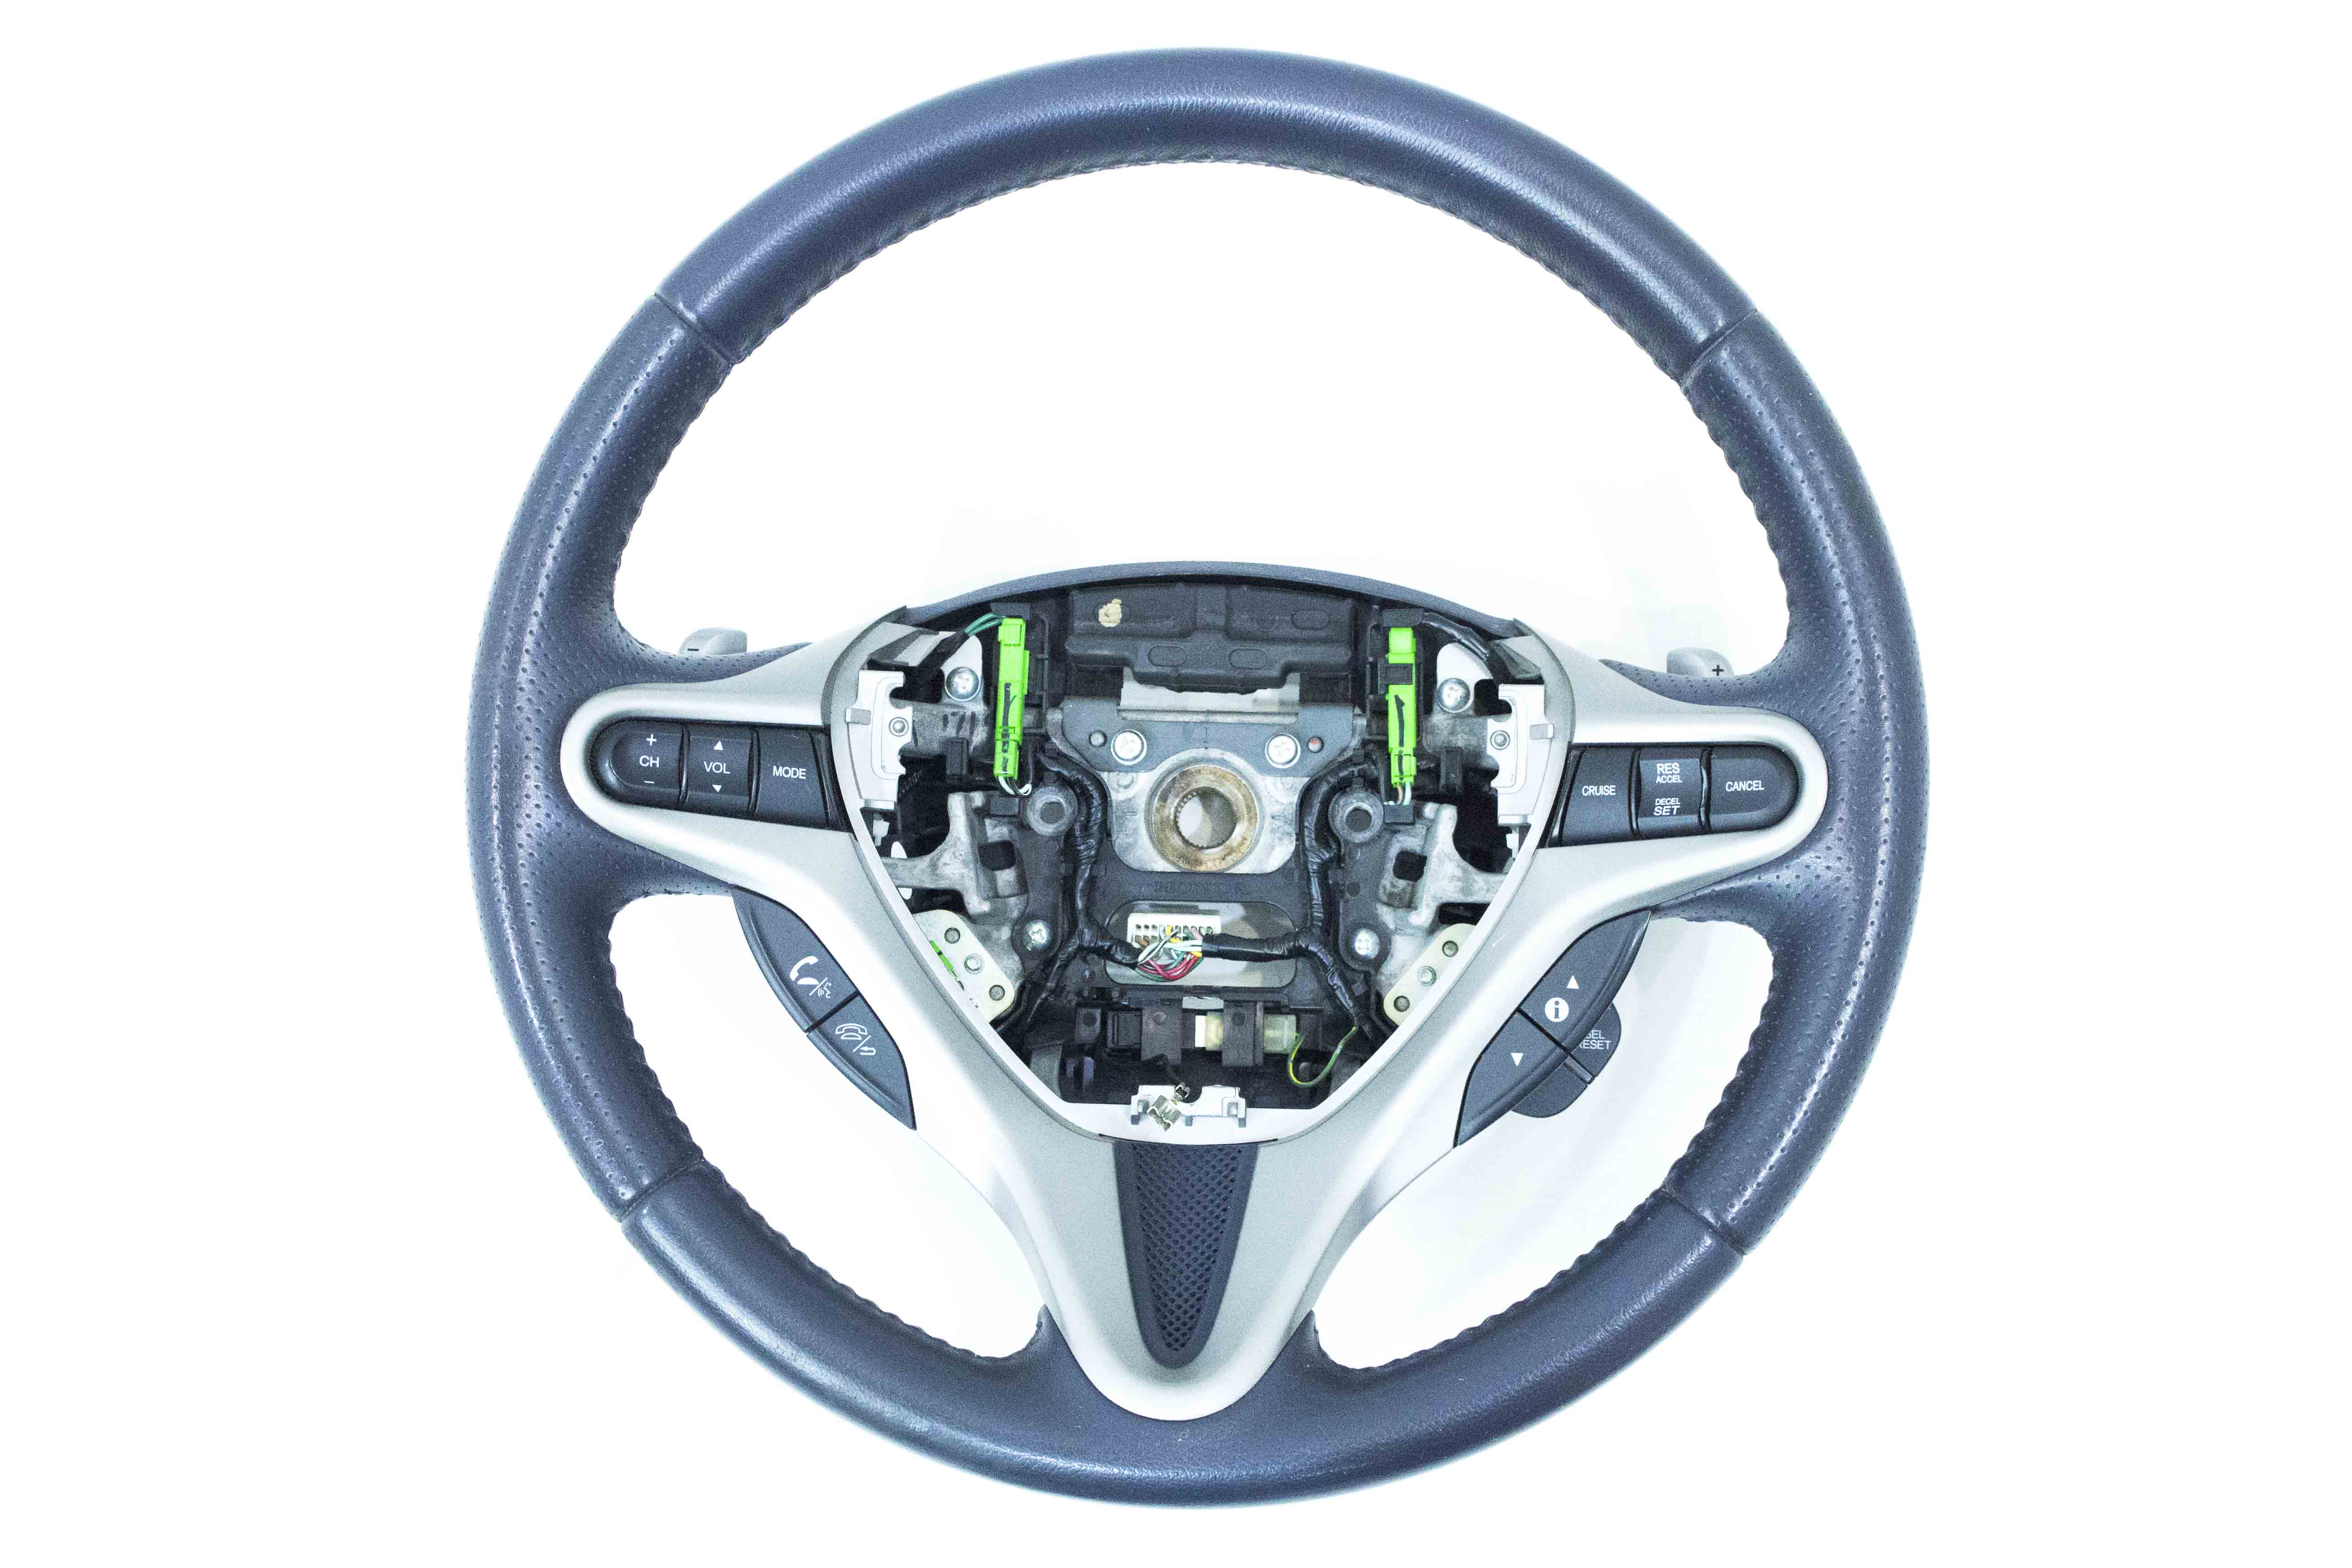 Руль Honda Civic 8. Руль Цивик 8. Руль с подогревом Honda Civic x 2017. Мульти руль на Хонда Цивик 8 поколения. Мультируль honda